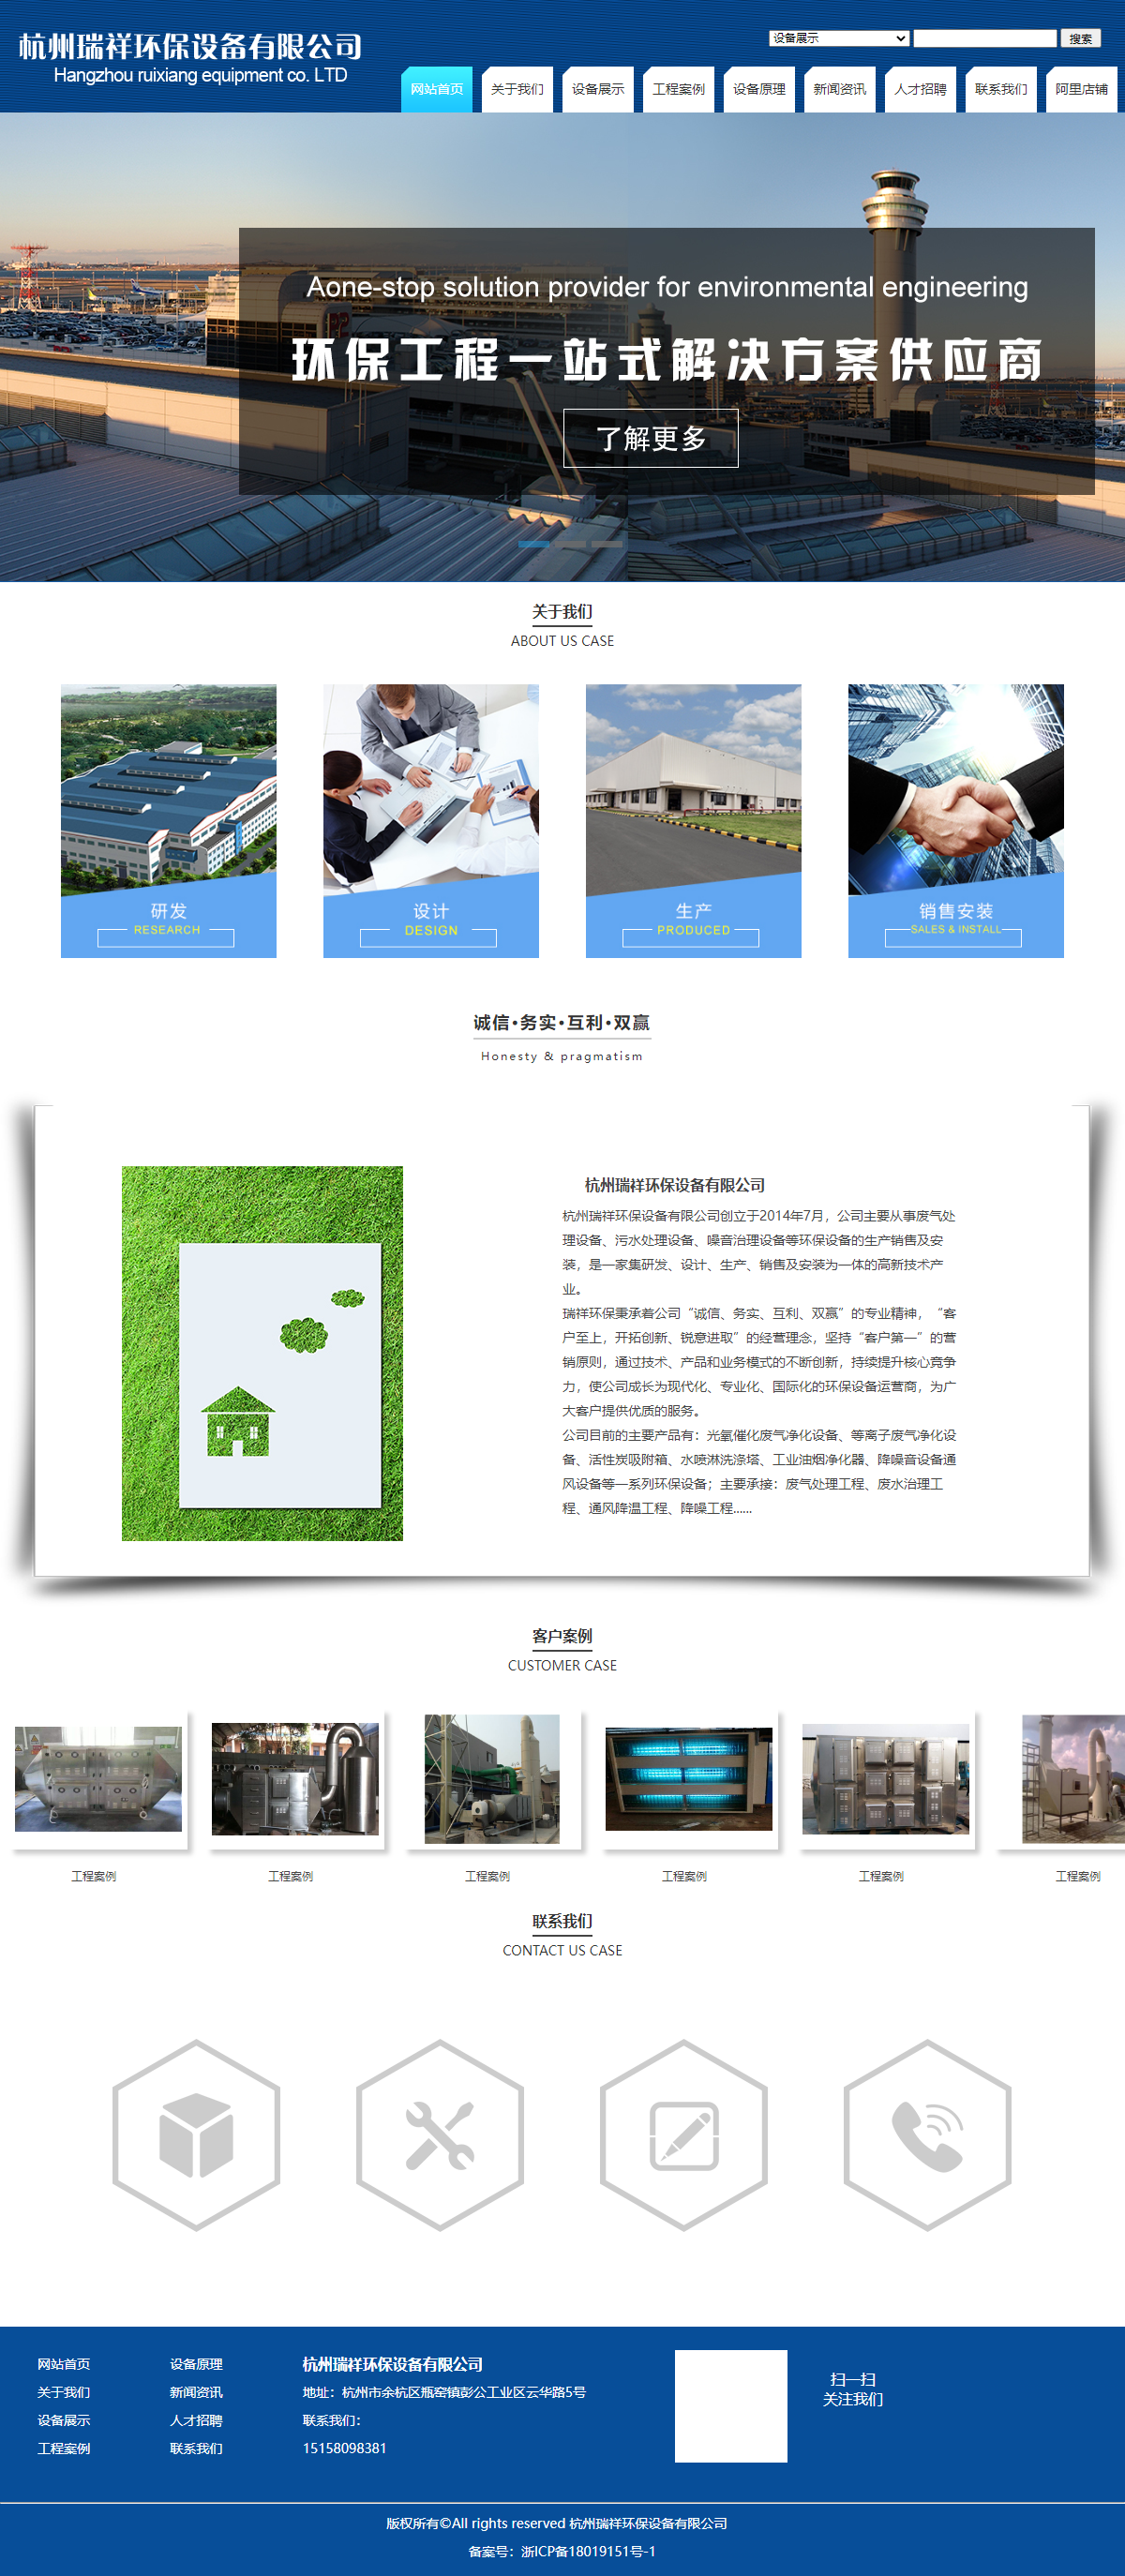 杭州瑞祥环保设备有限公司网站案例